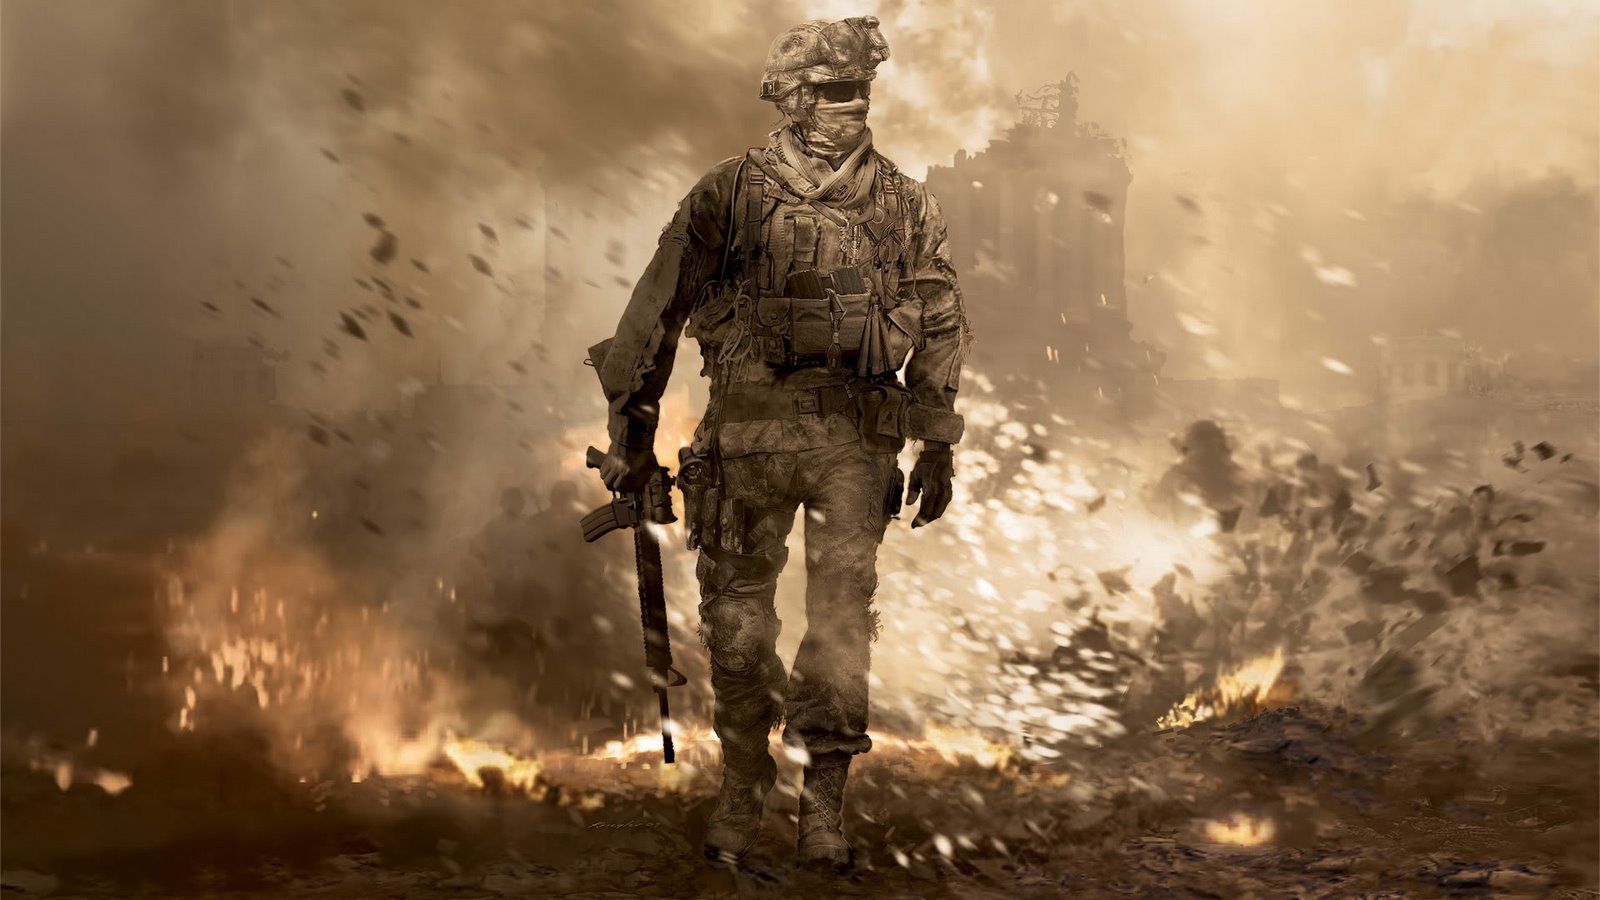 Call of Duty Modern Warfare 2 revela requisitos para PC